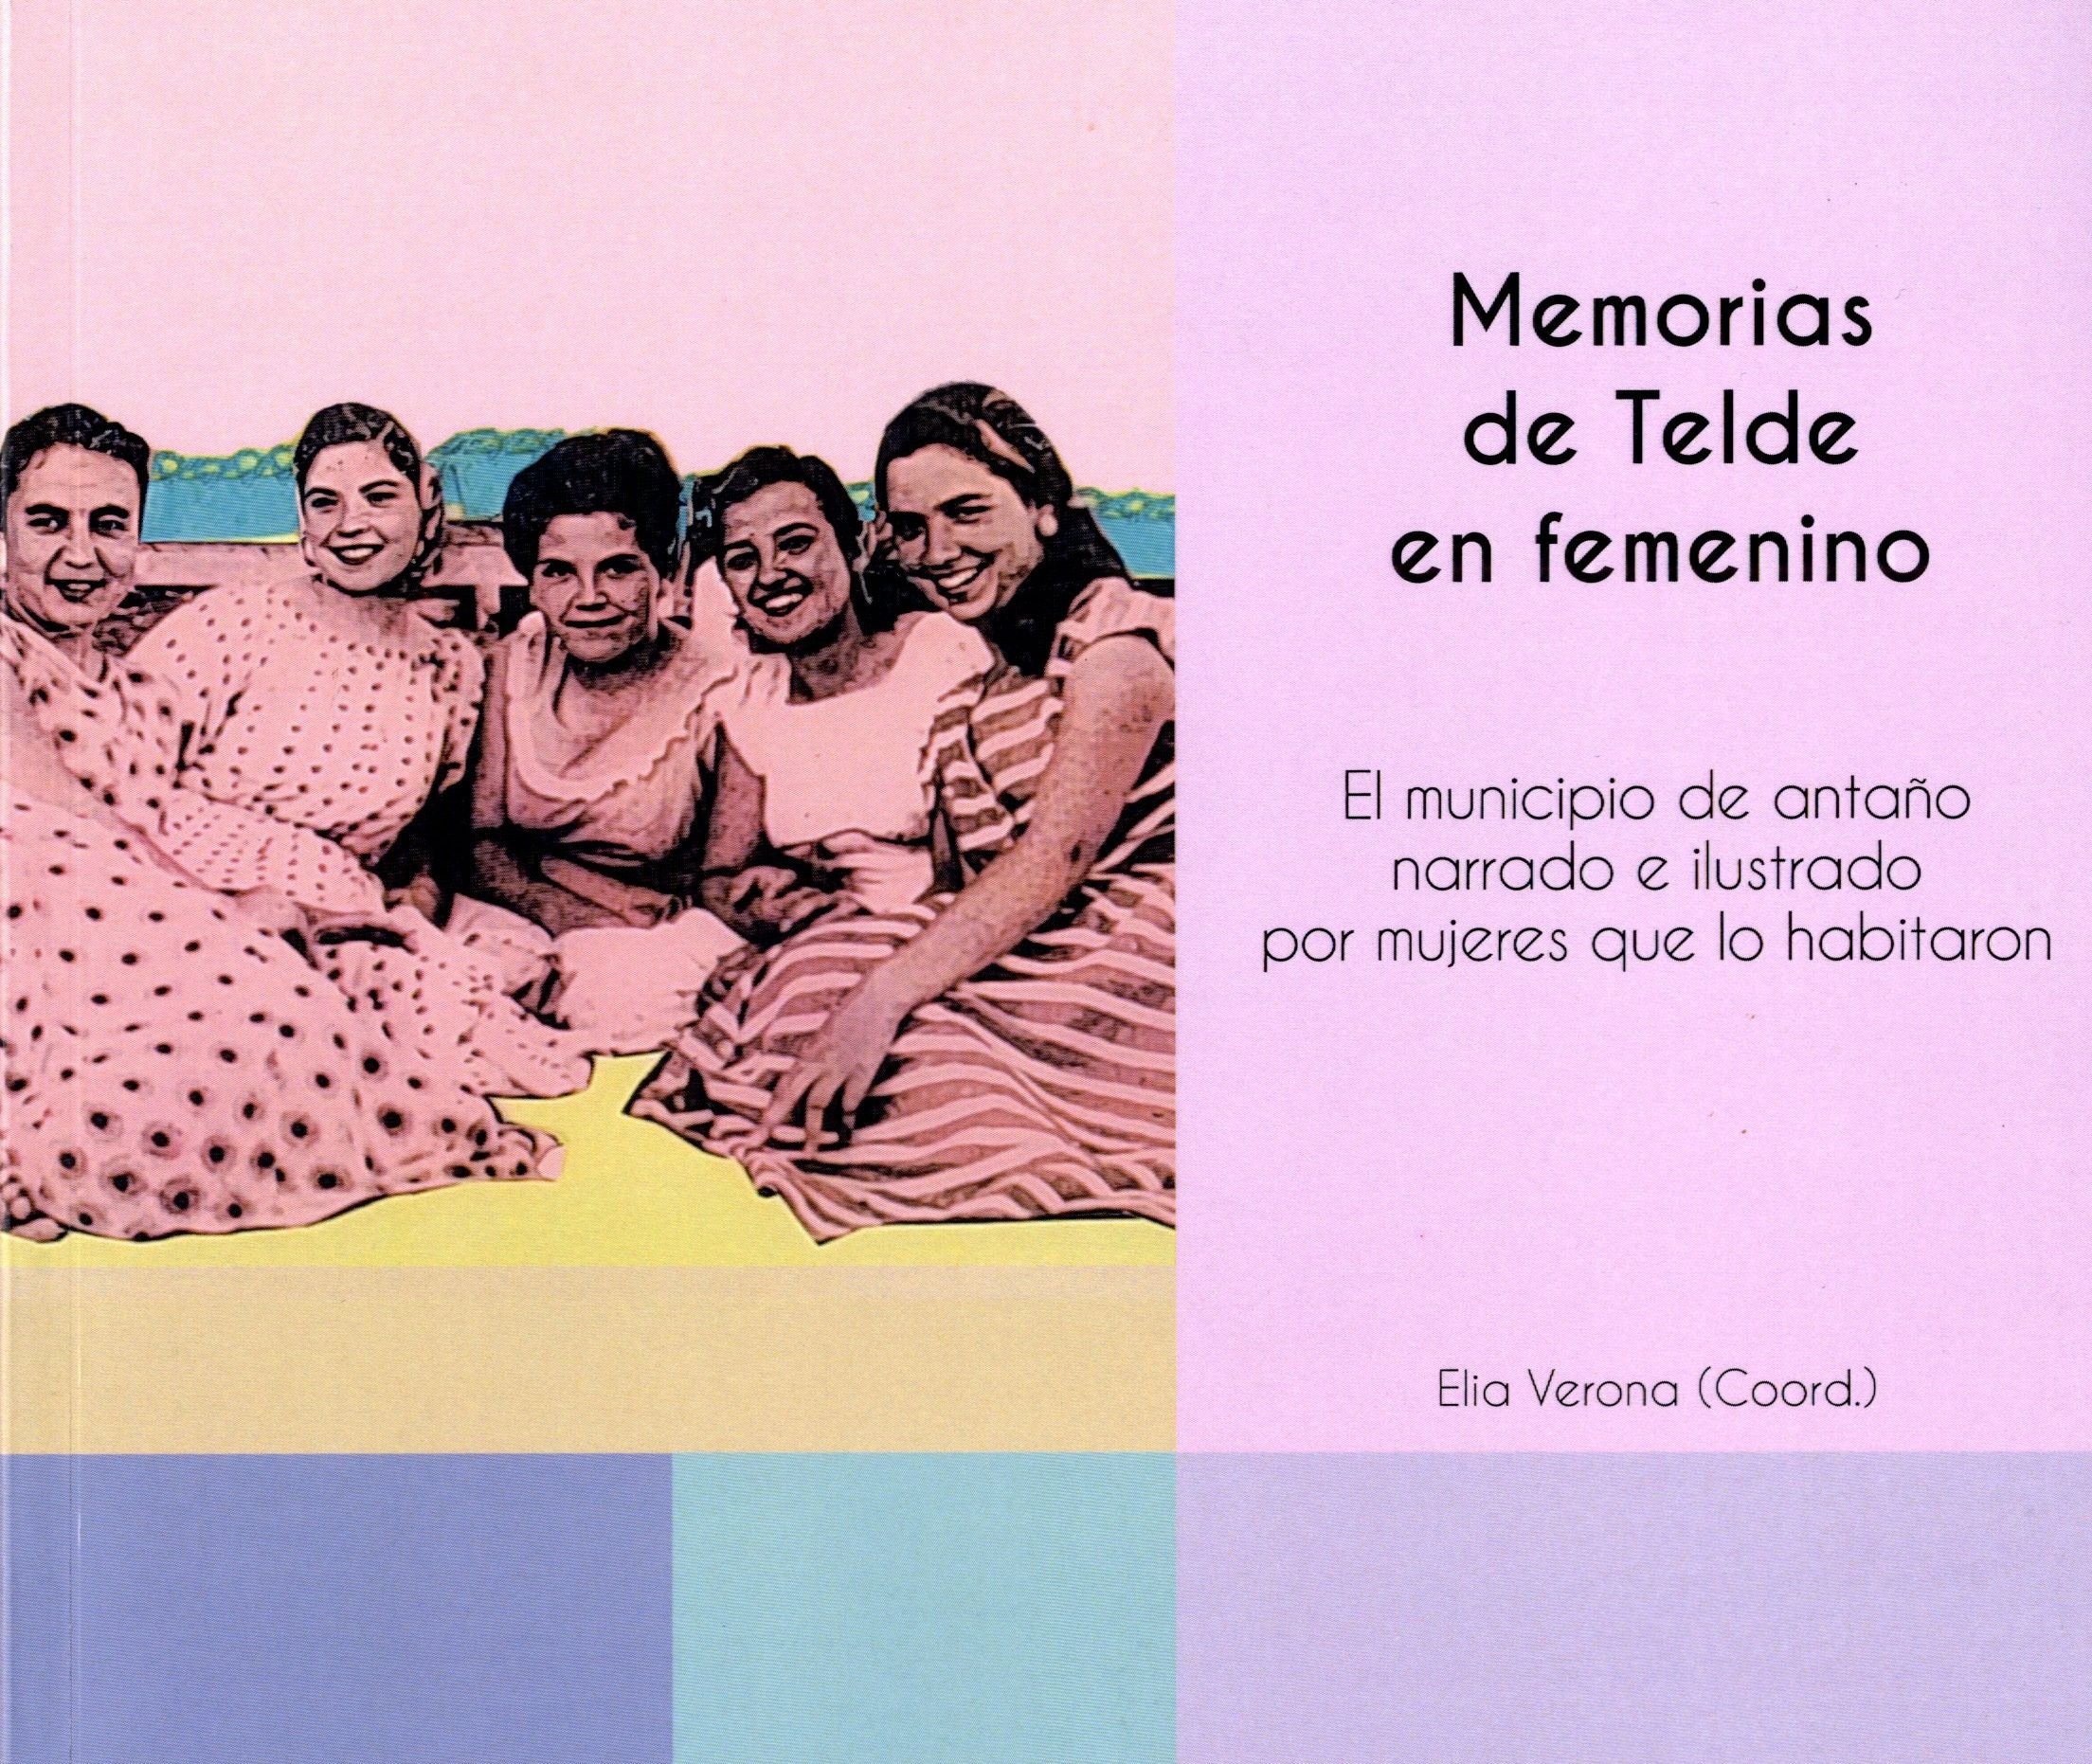 Cubierta del libro Memorias de Telde en Femenino. Memorias de antaño narrado e ilustrado por mujeres que lo habitaron, con fotografía antigua de mujeres sentada en el suelo.